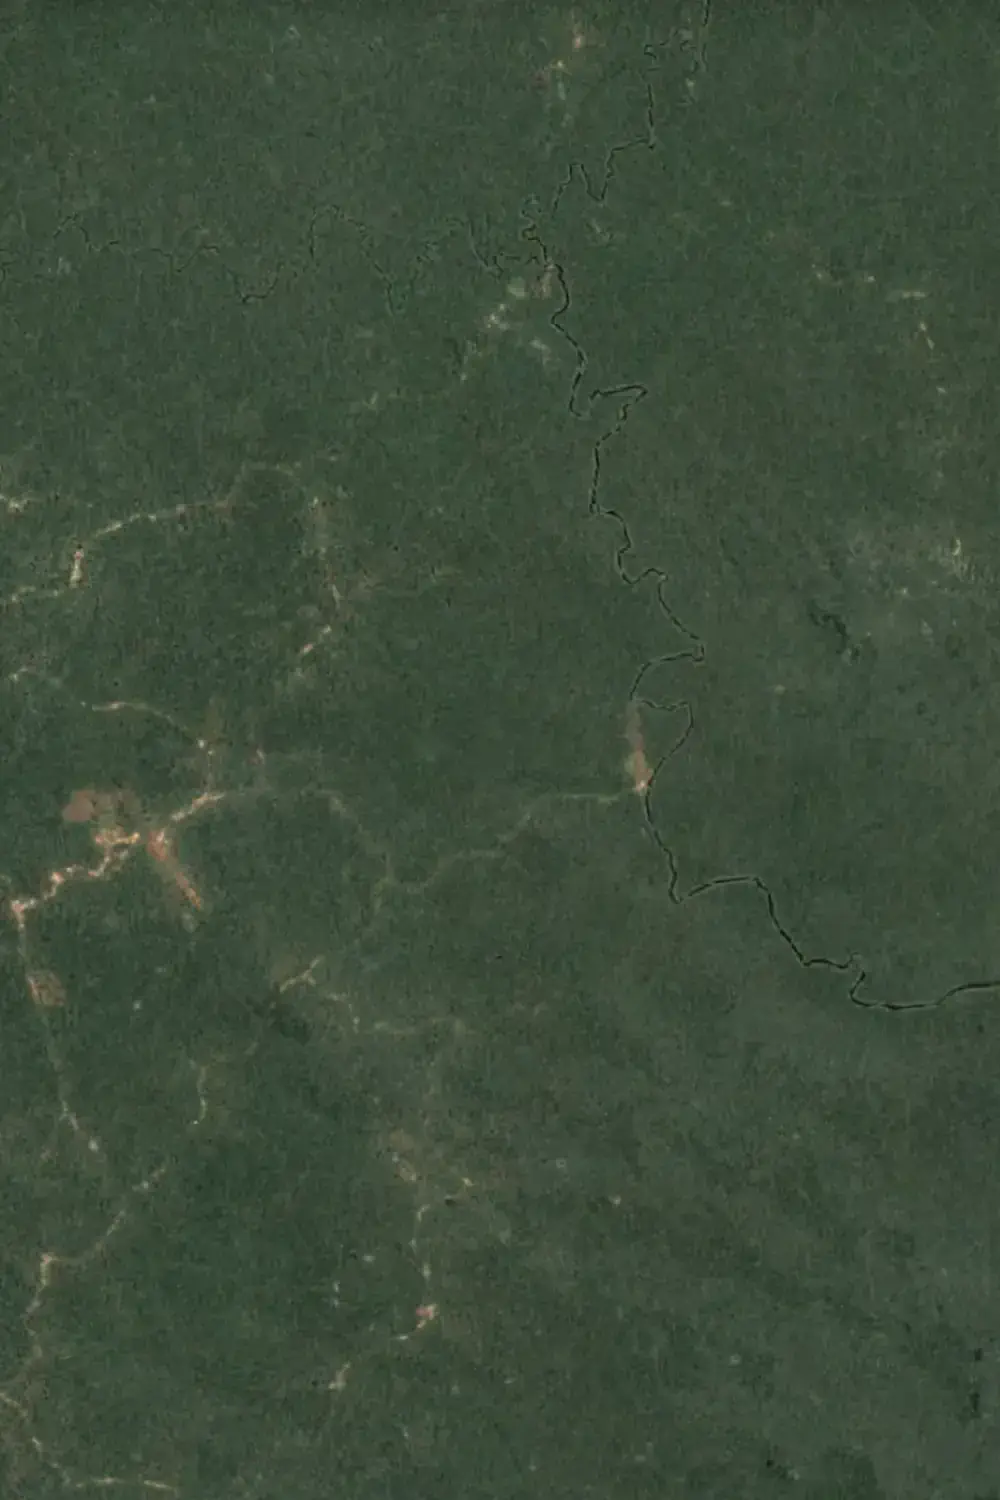 Satellitenbild des Regenwalds vor der Sudcam Plantage in Südkamerun von 2001